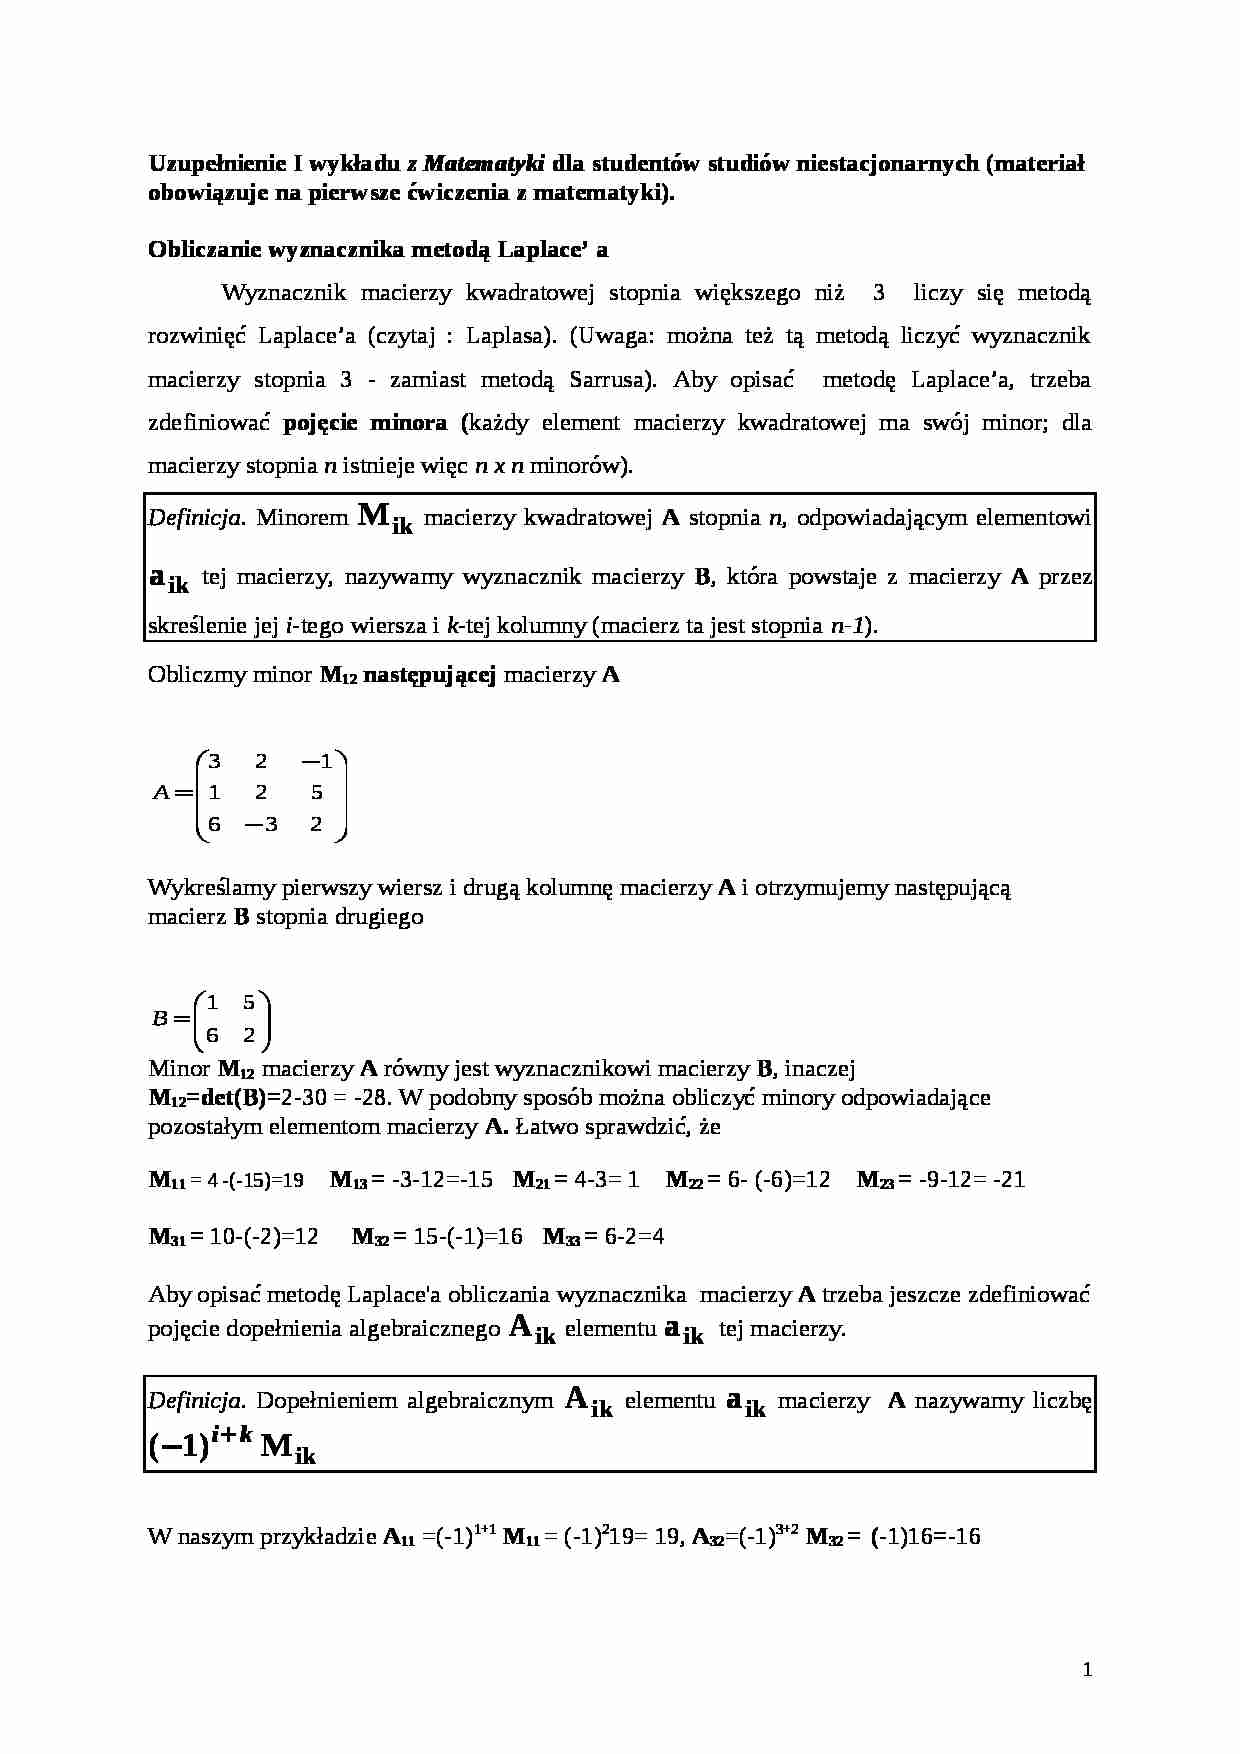 Uzupełnienie wykładu 1 z Matematyki - strona 1